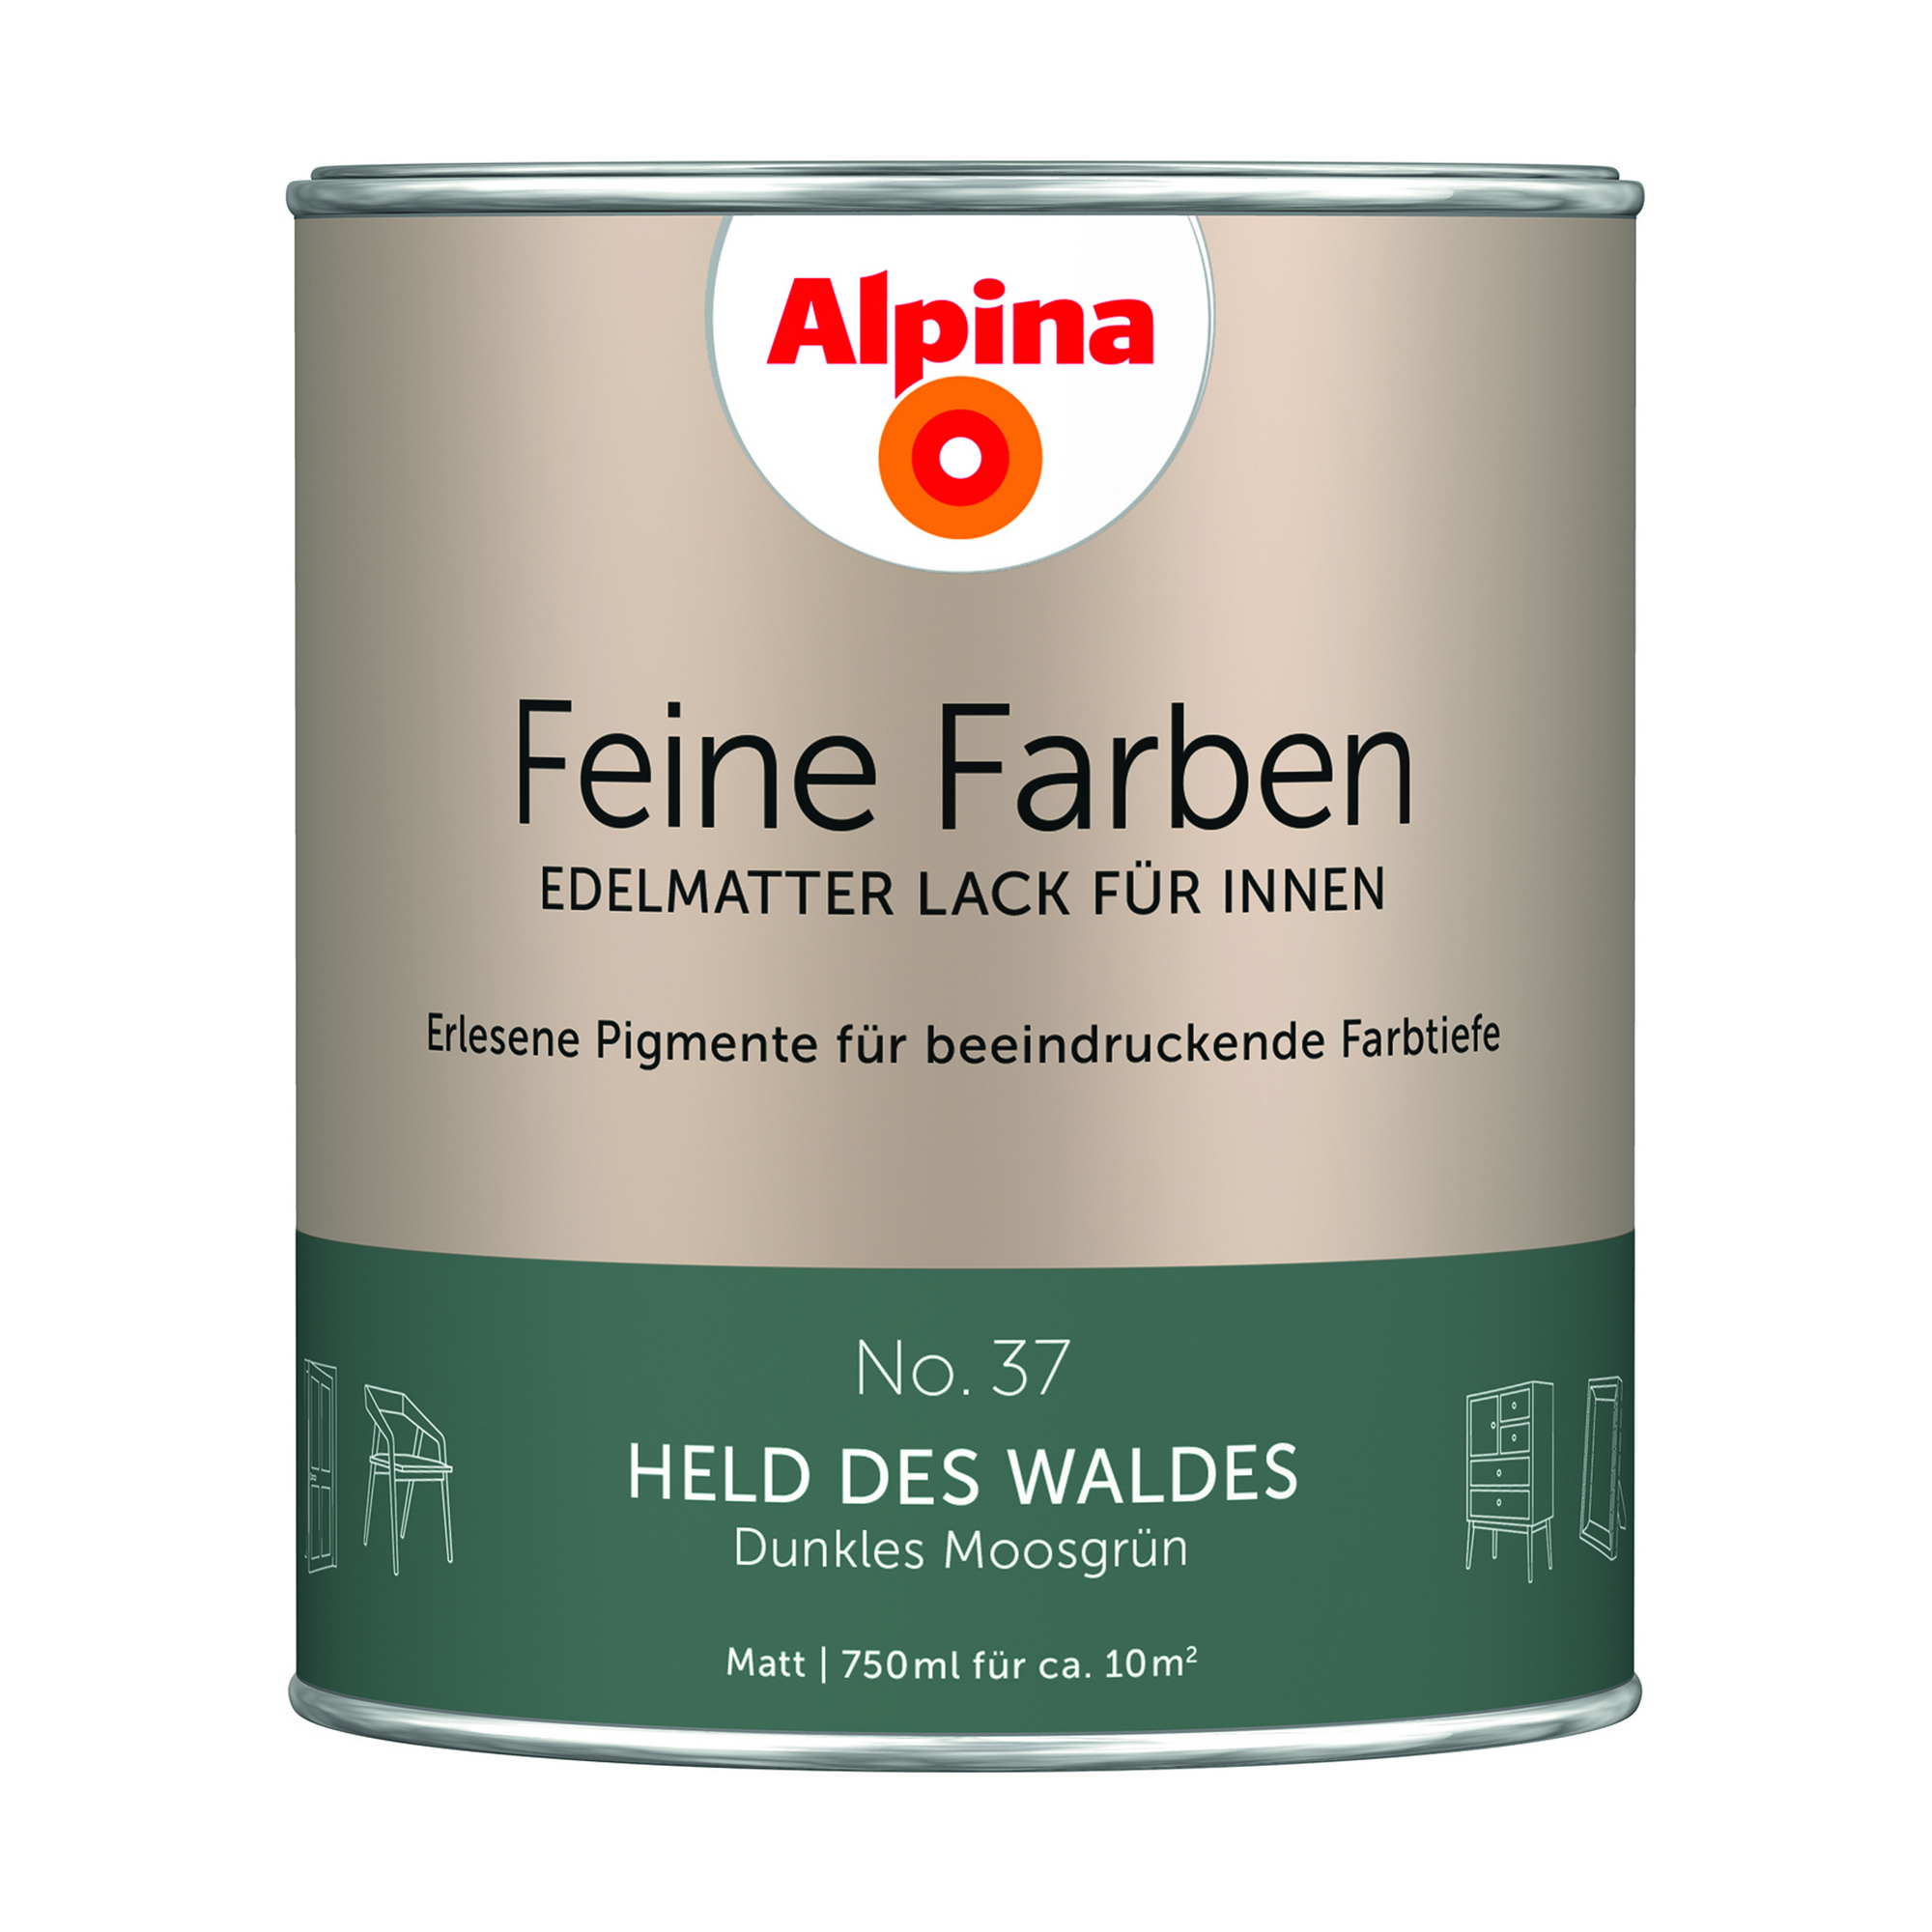 Feine Farben 'Held des Waldes' moosgrün matt 750 ml + product picture